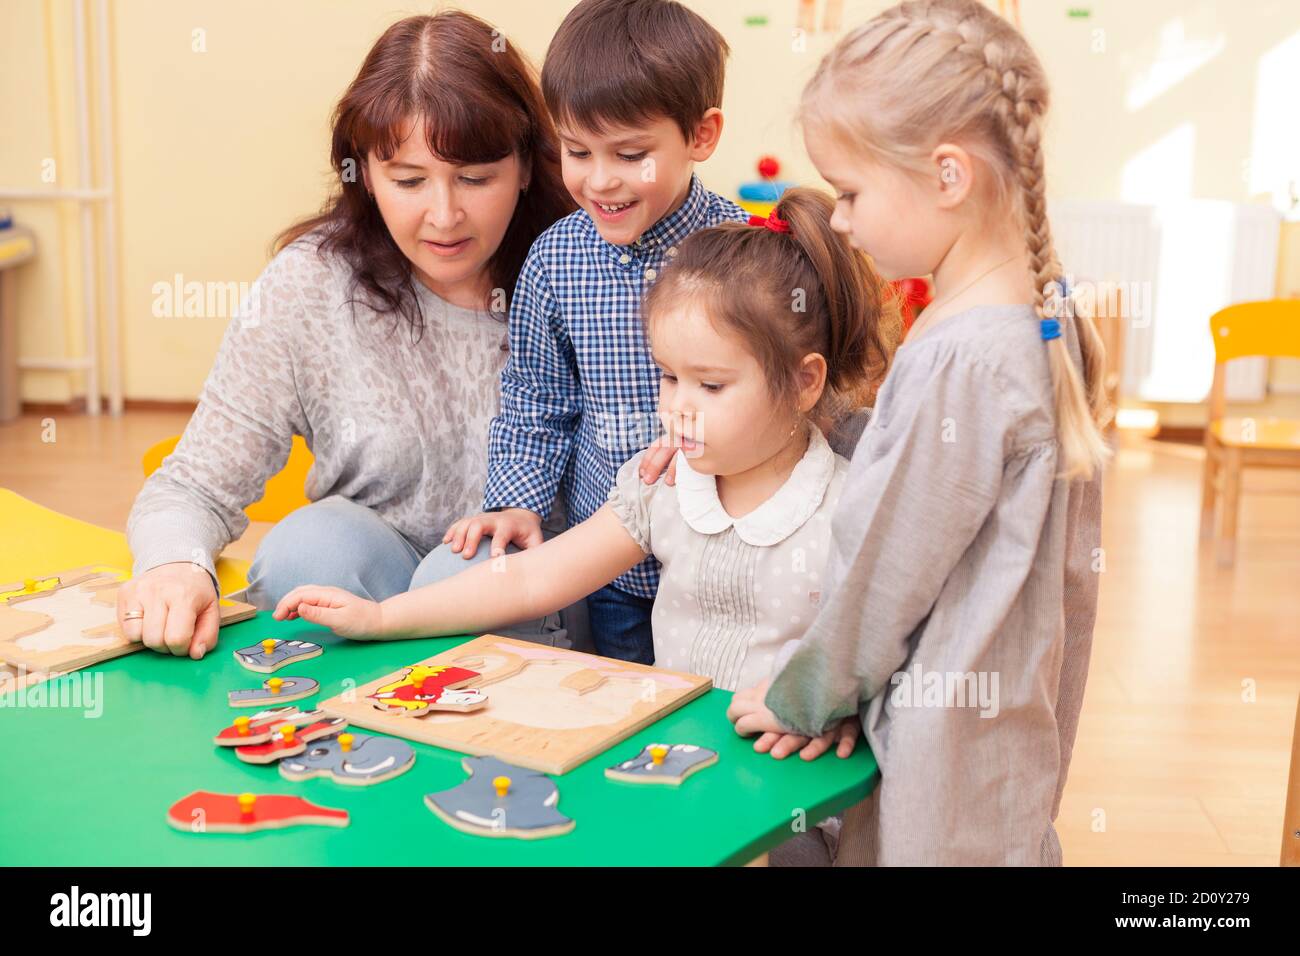 belle femme mature enseignante collectionne le puzzle avec trois élèves d'une école maternelle à la table verte. Image couleur horizontale. Banque D'Images